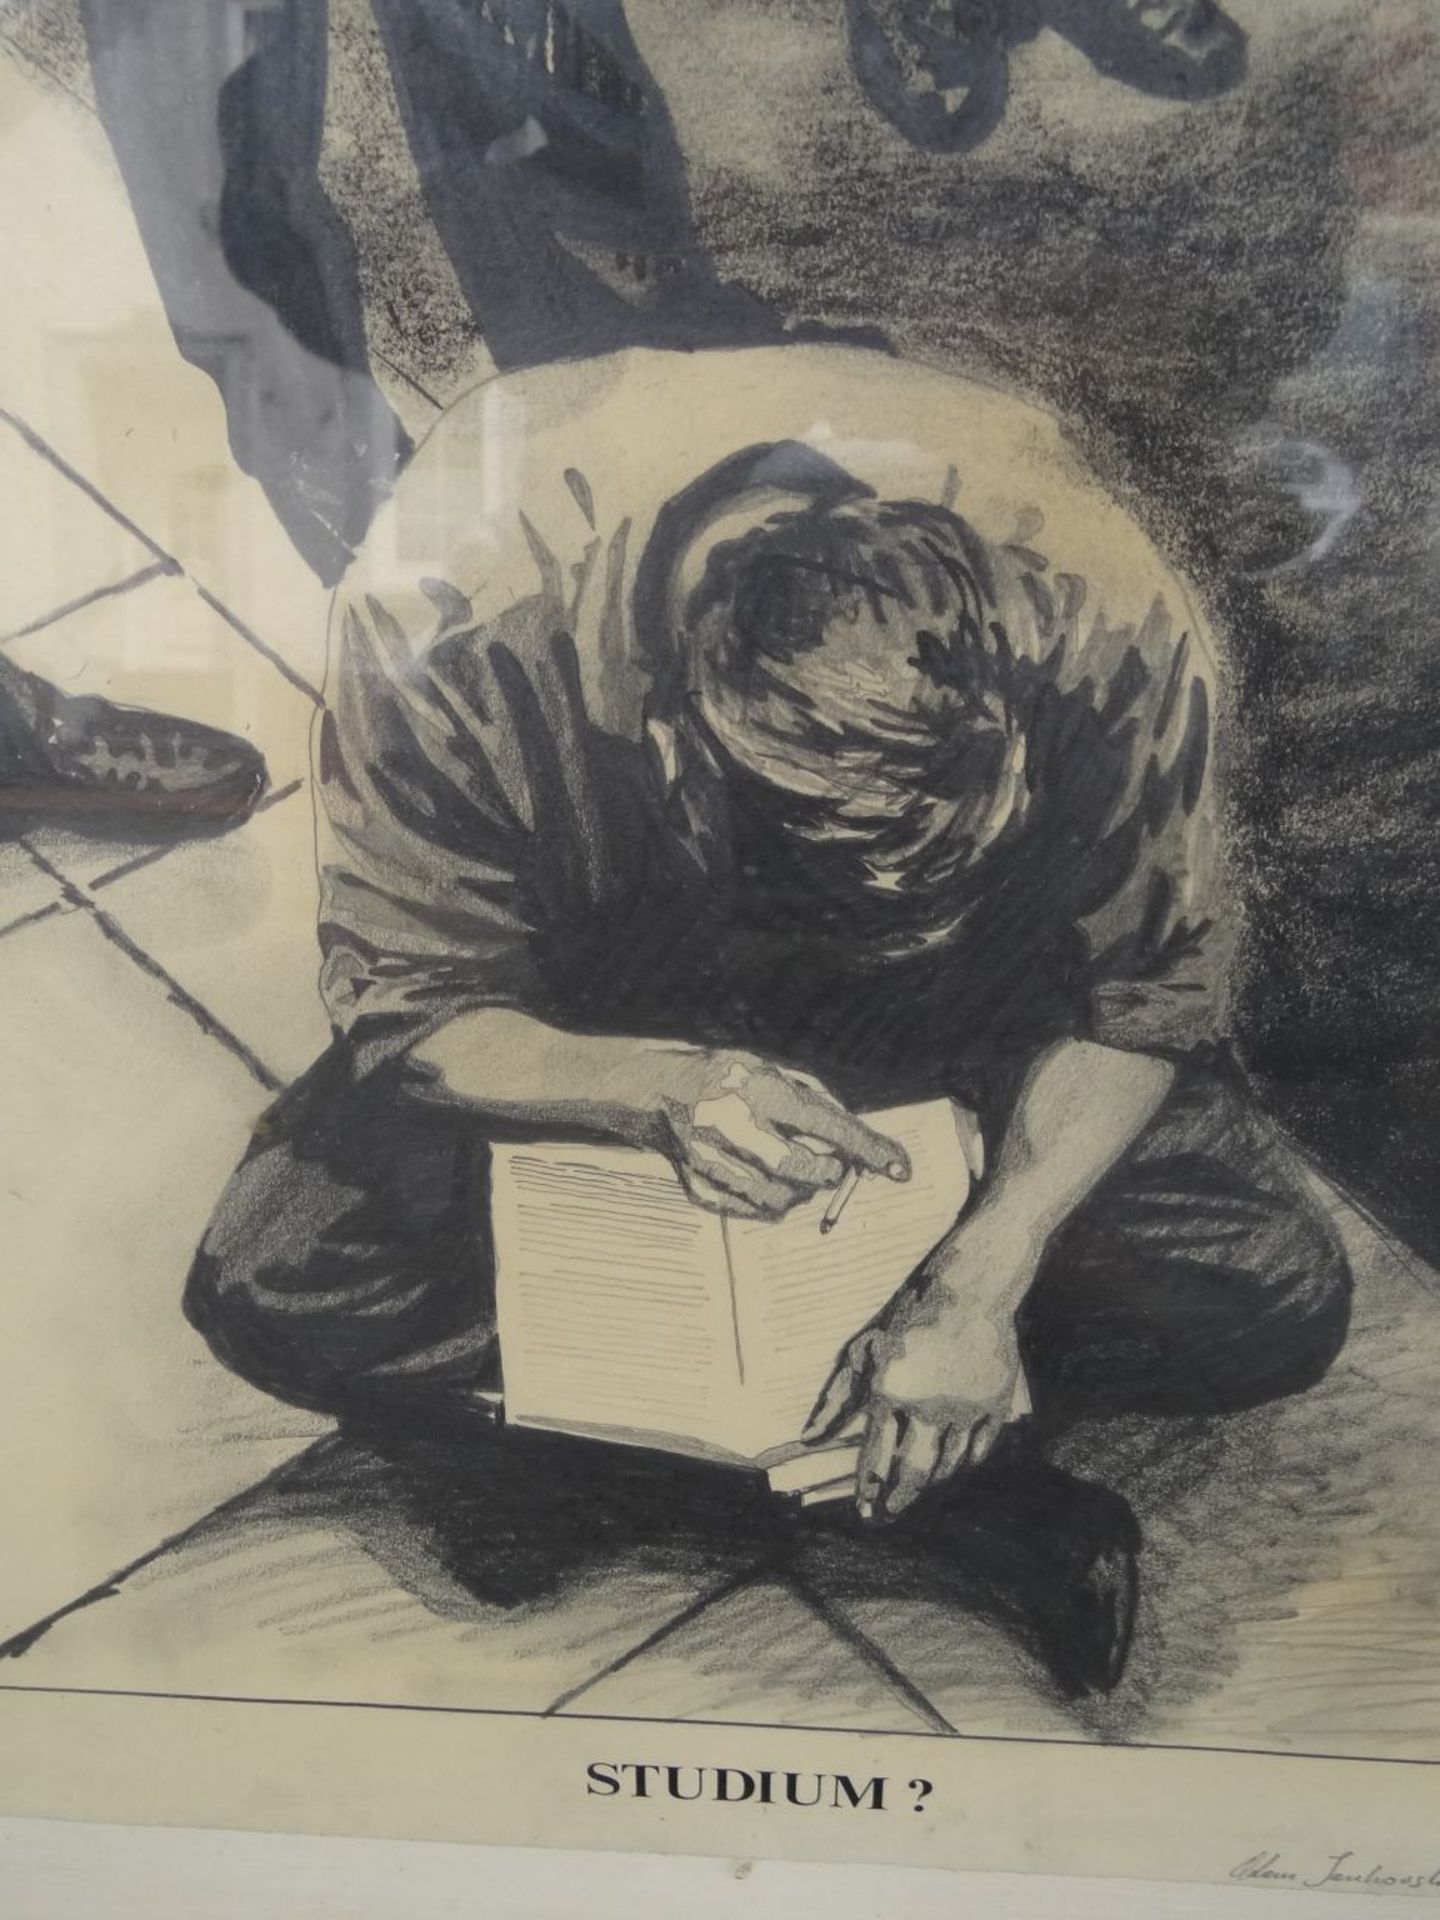 unleserl, signiert, 1975? "Studium" betitelte gr. Zeichnung, dat. 1968, ger/Glas, RG 89x68 cm - Bild 3 aus 7